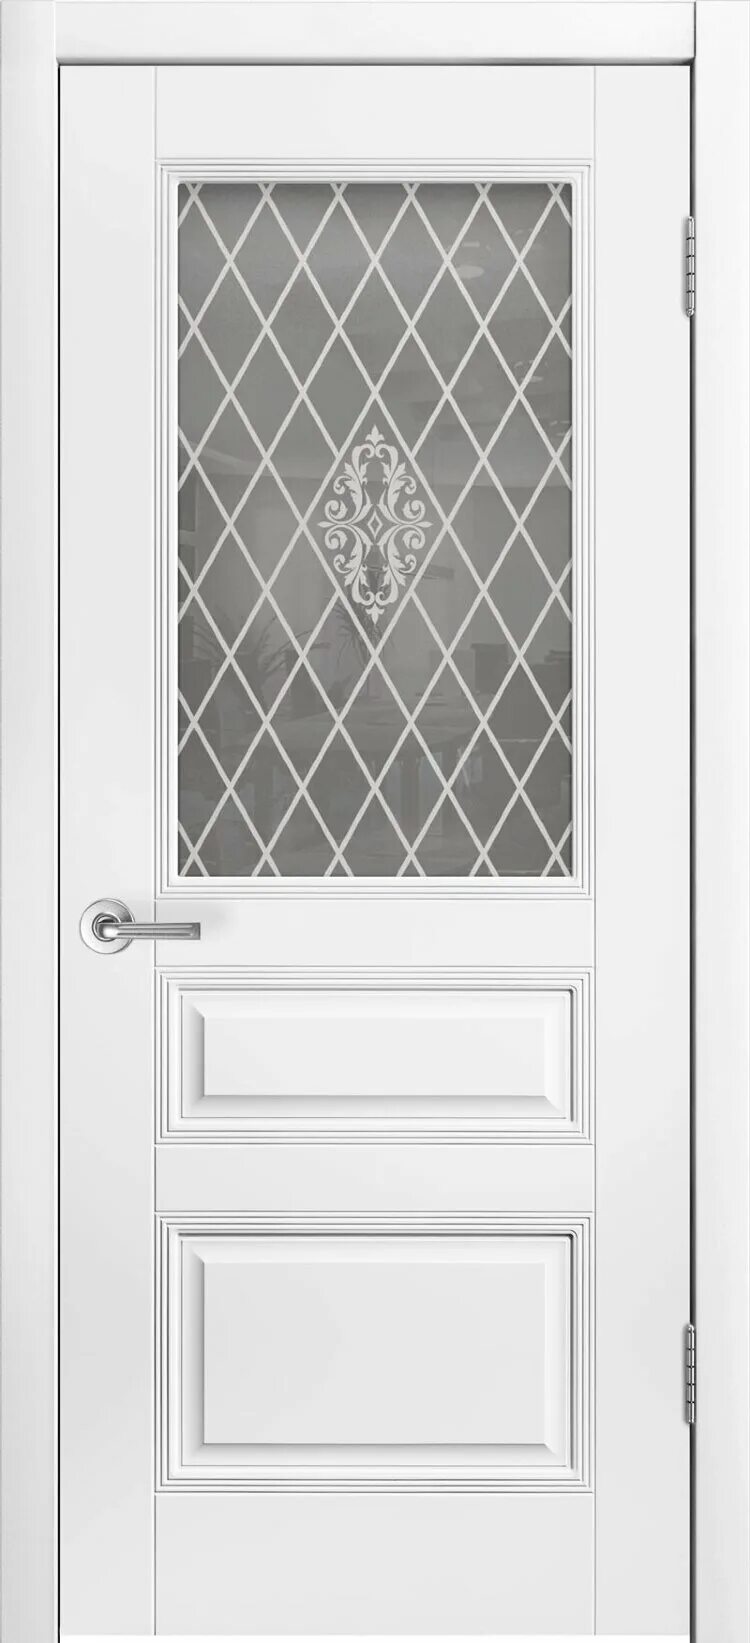 Дверь классика стекло. Трио Грейс в1 белая эмаль. Межкомнатная дверь Ария Грэйс 2 ПГ (белая эмаль/патина серебро). Дверь Аккорд ПГ эмаль белая. Двери шикодорс трио Грейс глухая с патиной серебро.